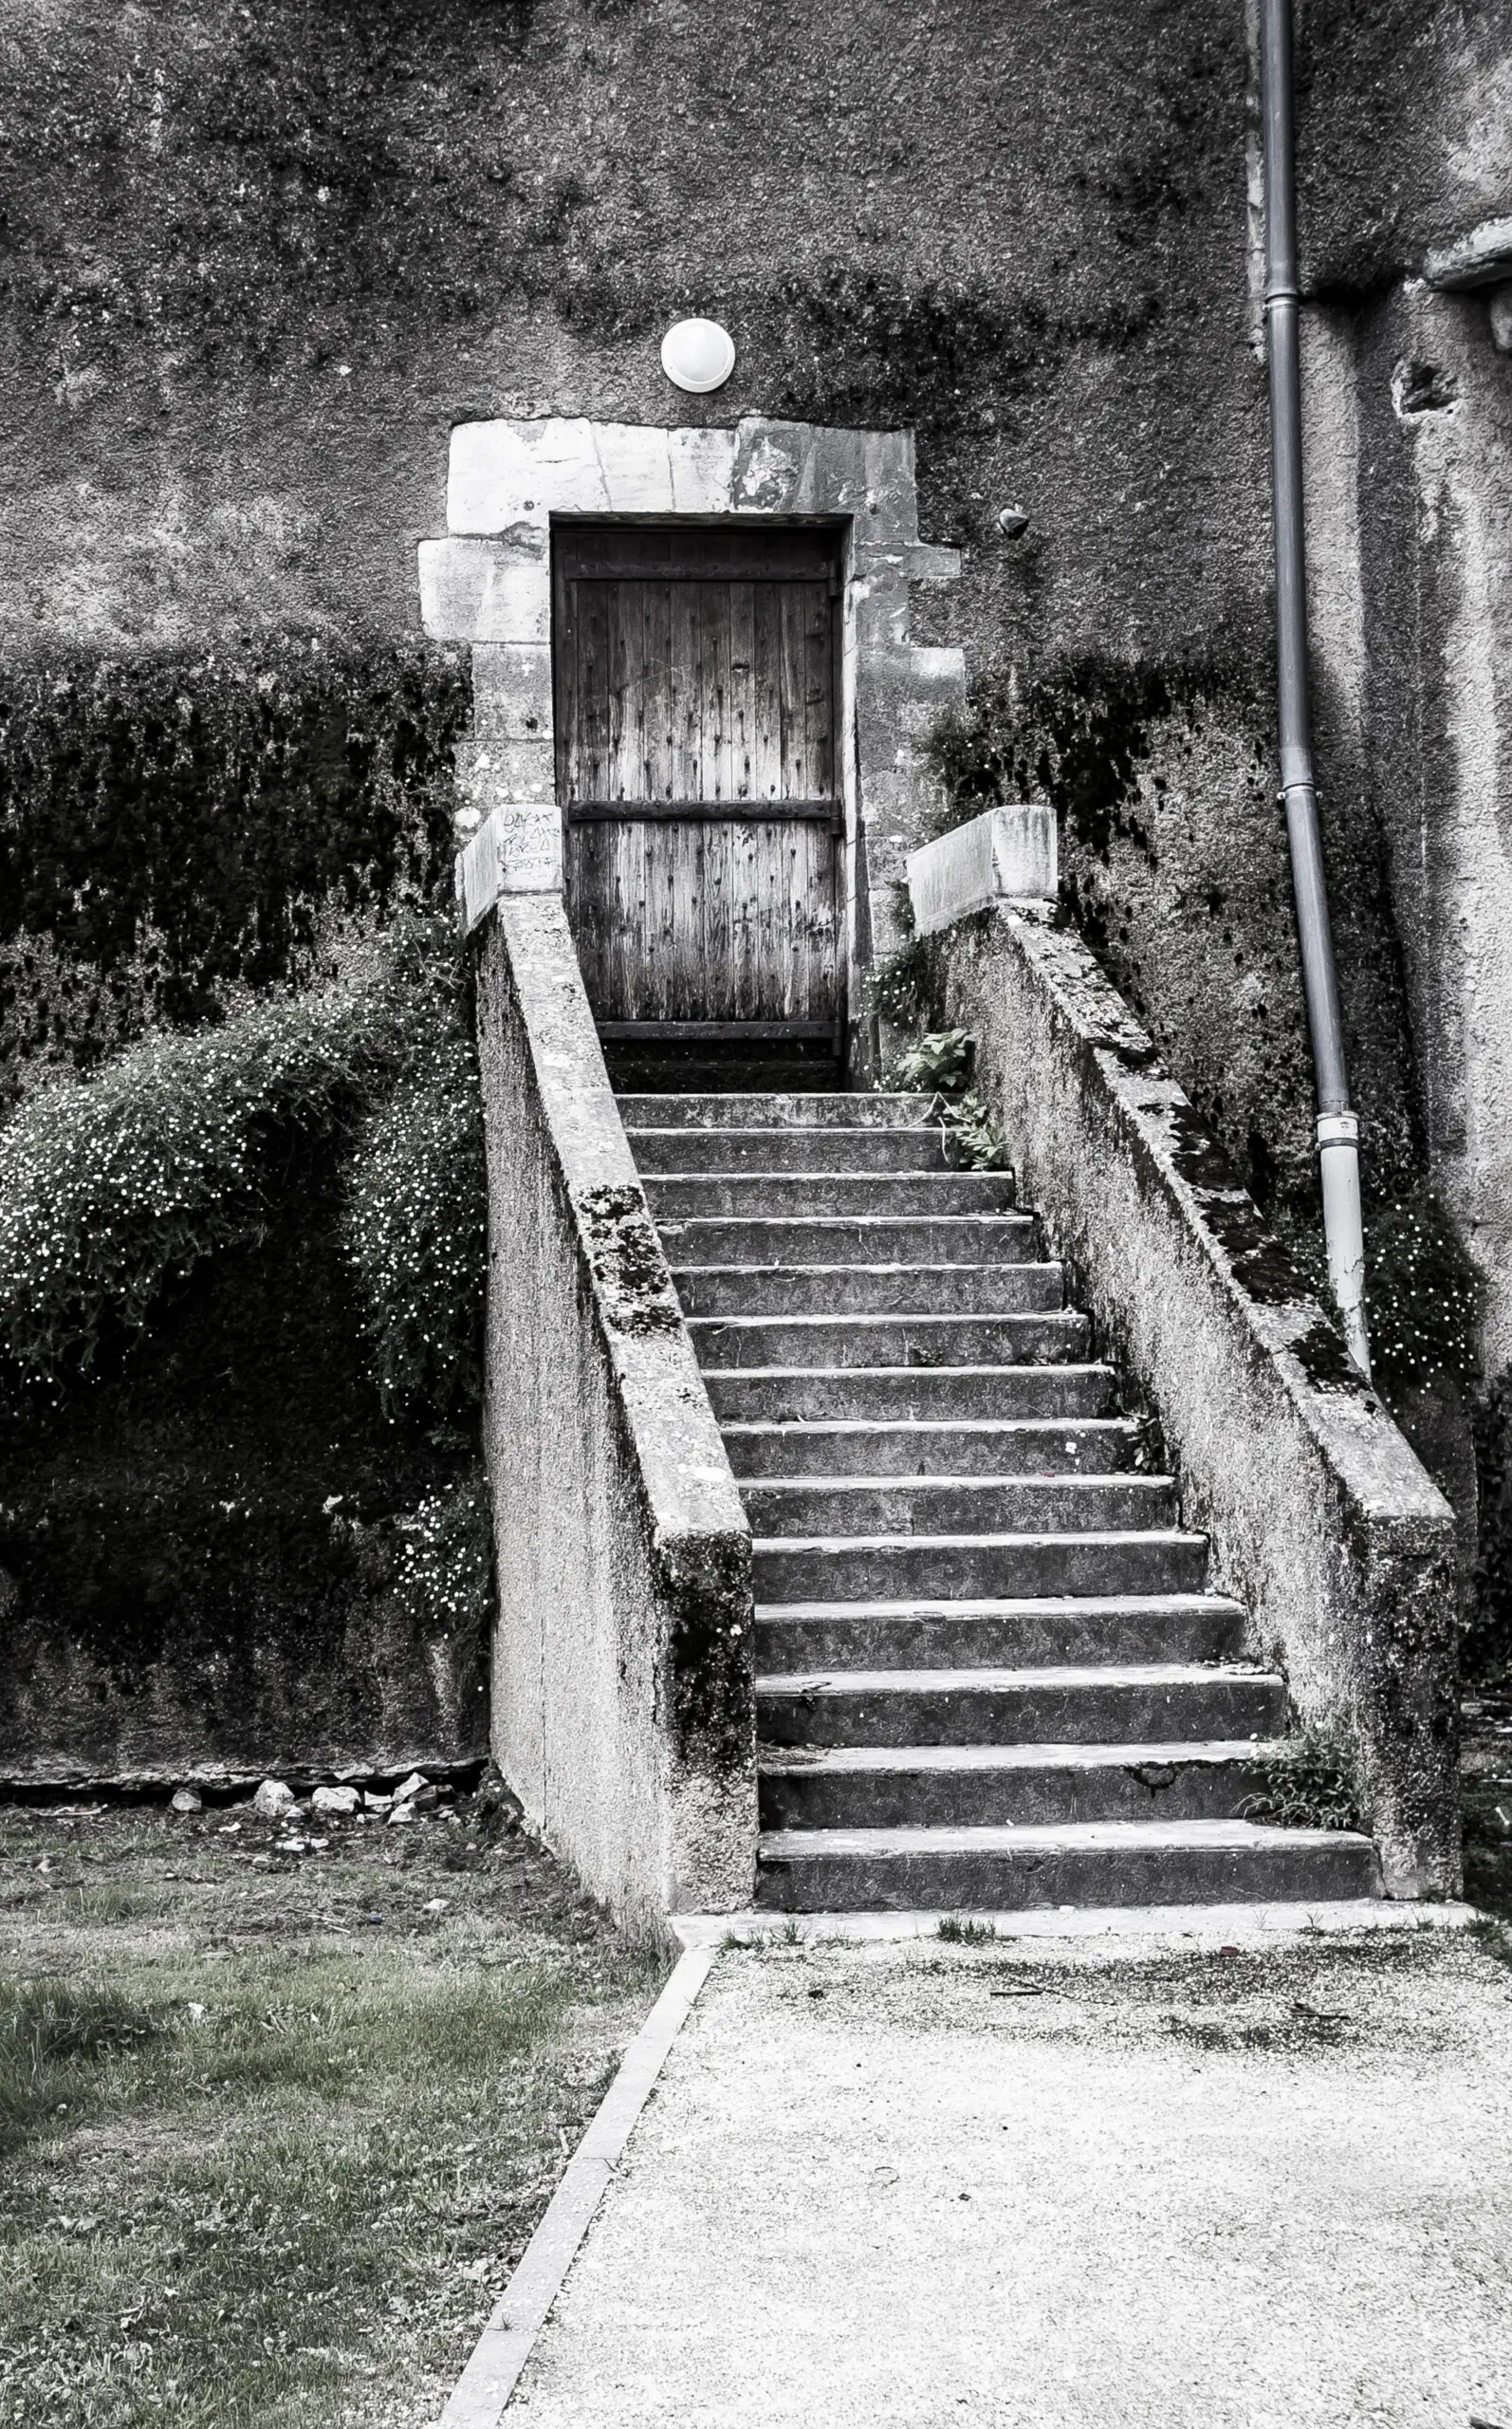 Wandbild (3211) Stairs to where? präsentiert: Architektur,Sonstiges Kreatives